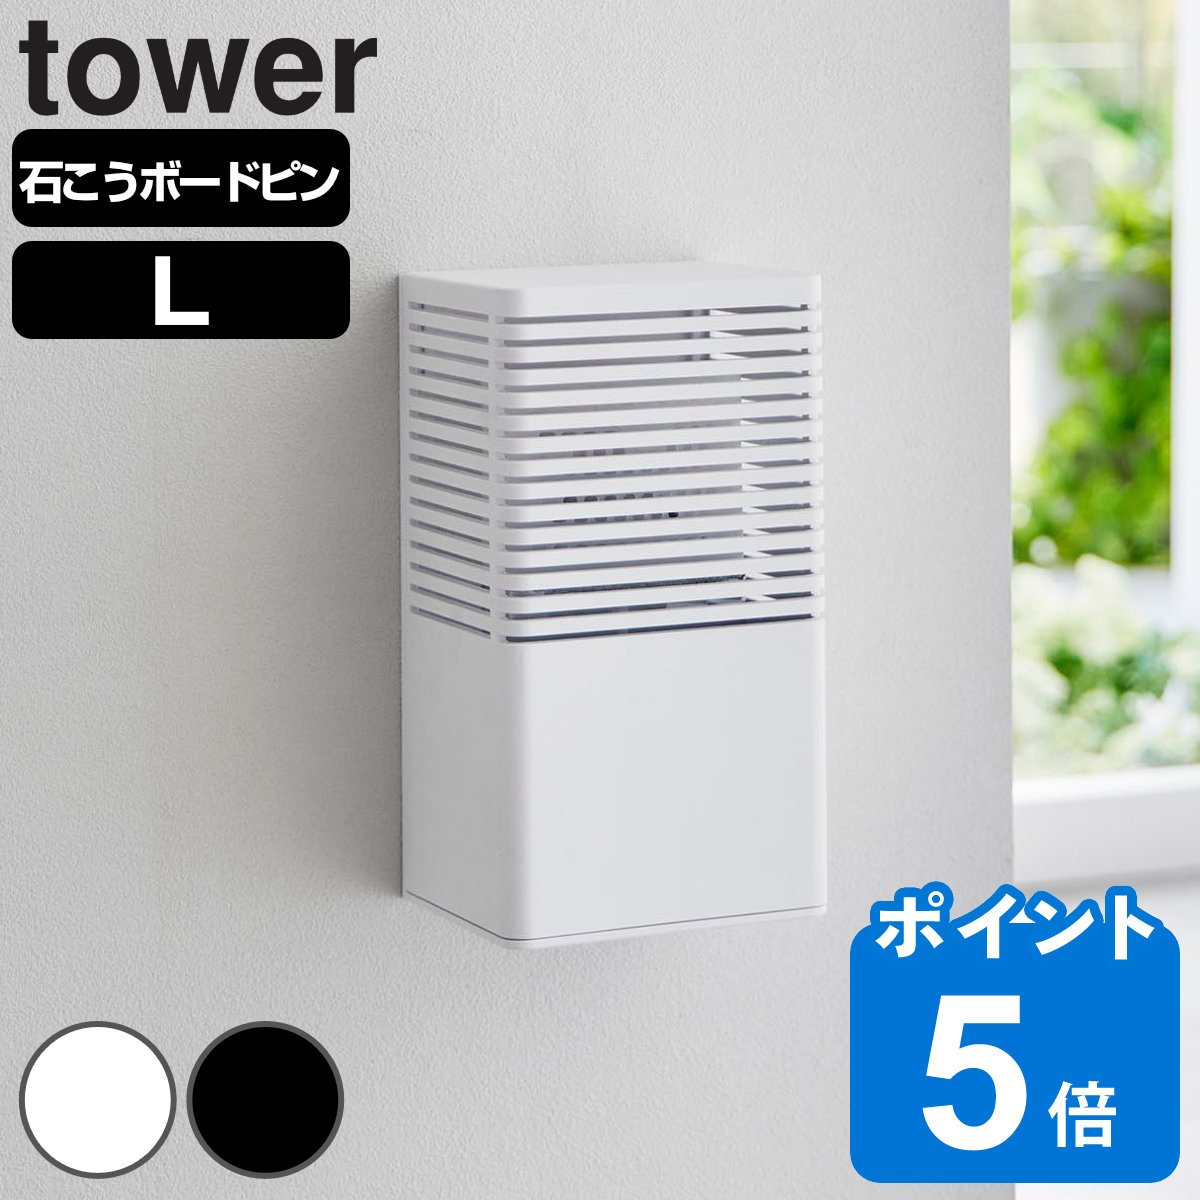 山崎実業 tower 石こうボード壁対応消臭剤ケース タワー L